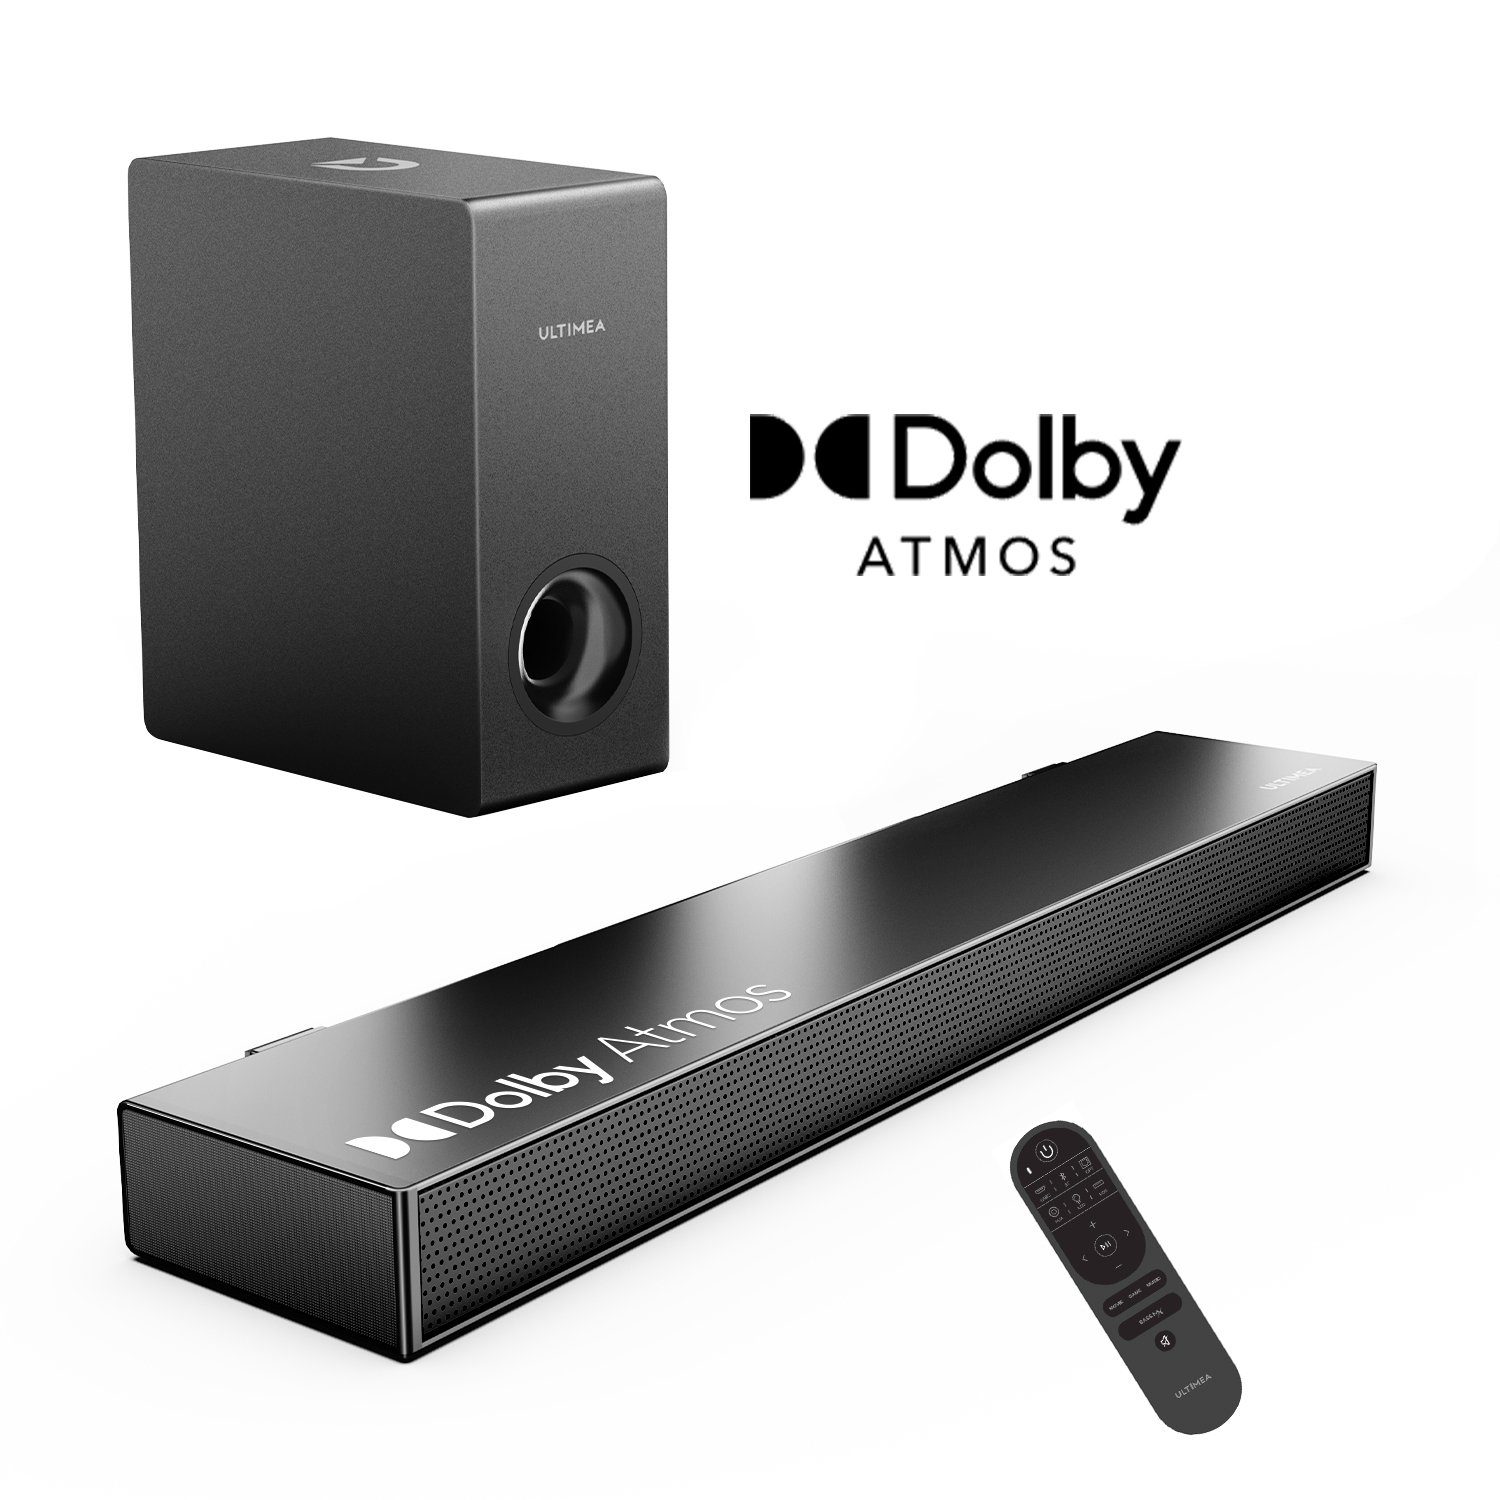 Ultimea Nova S50 2.1 Dolby Atmos Soundbar (190 W, Verbesserter Bass TV Lautsprecher, 3D Surround, HDMI eARC)